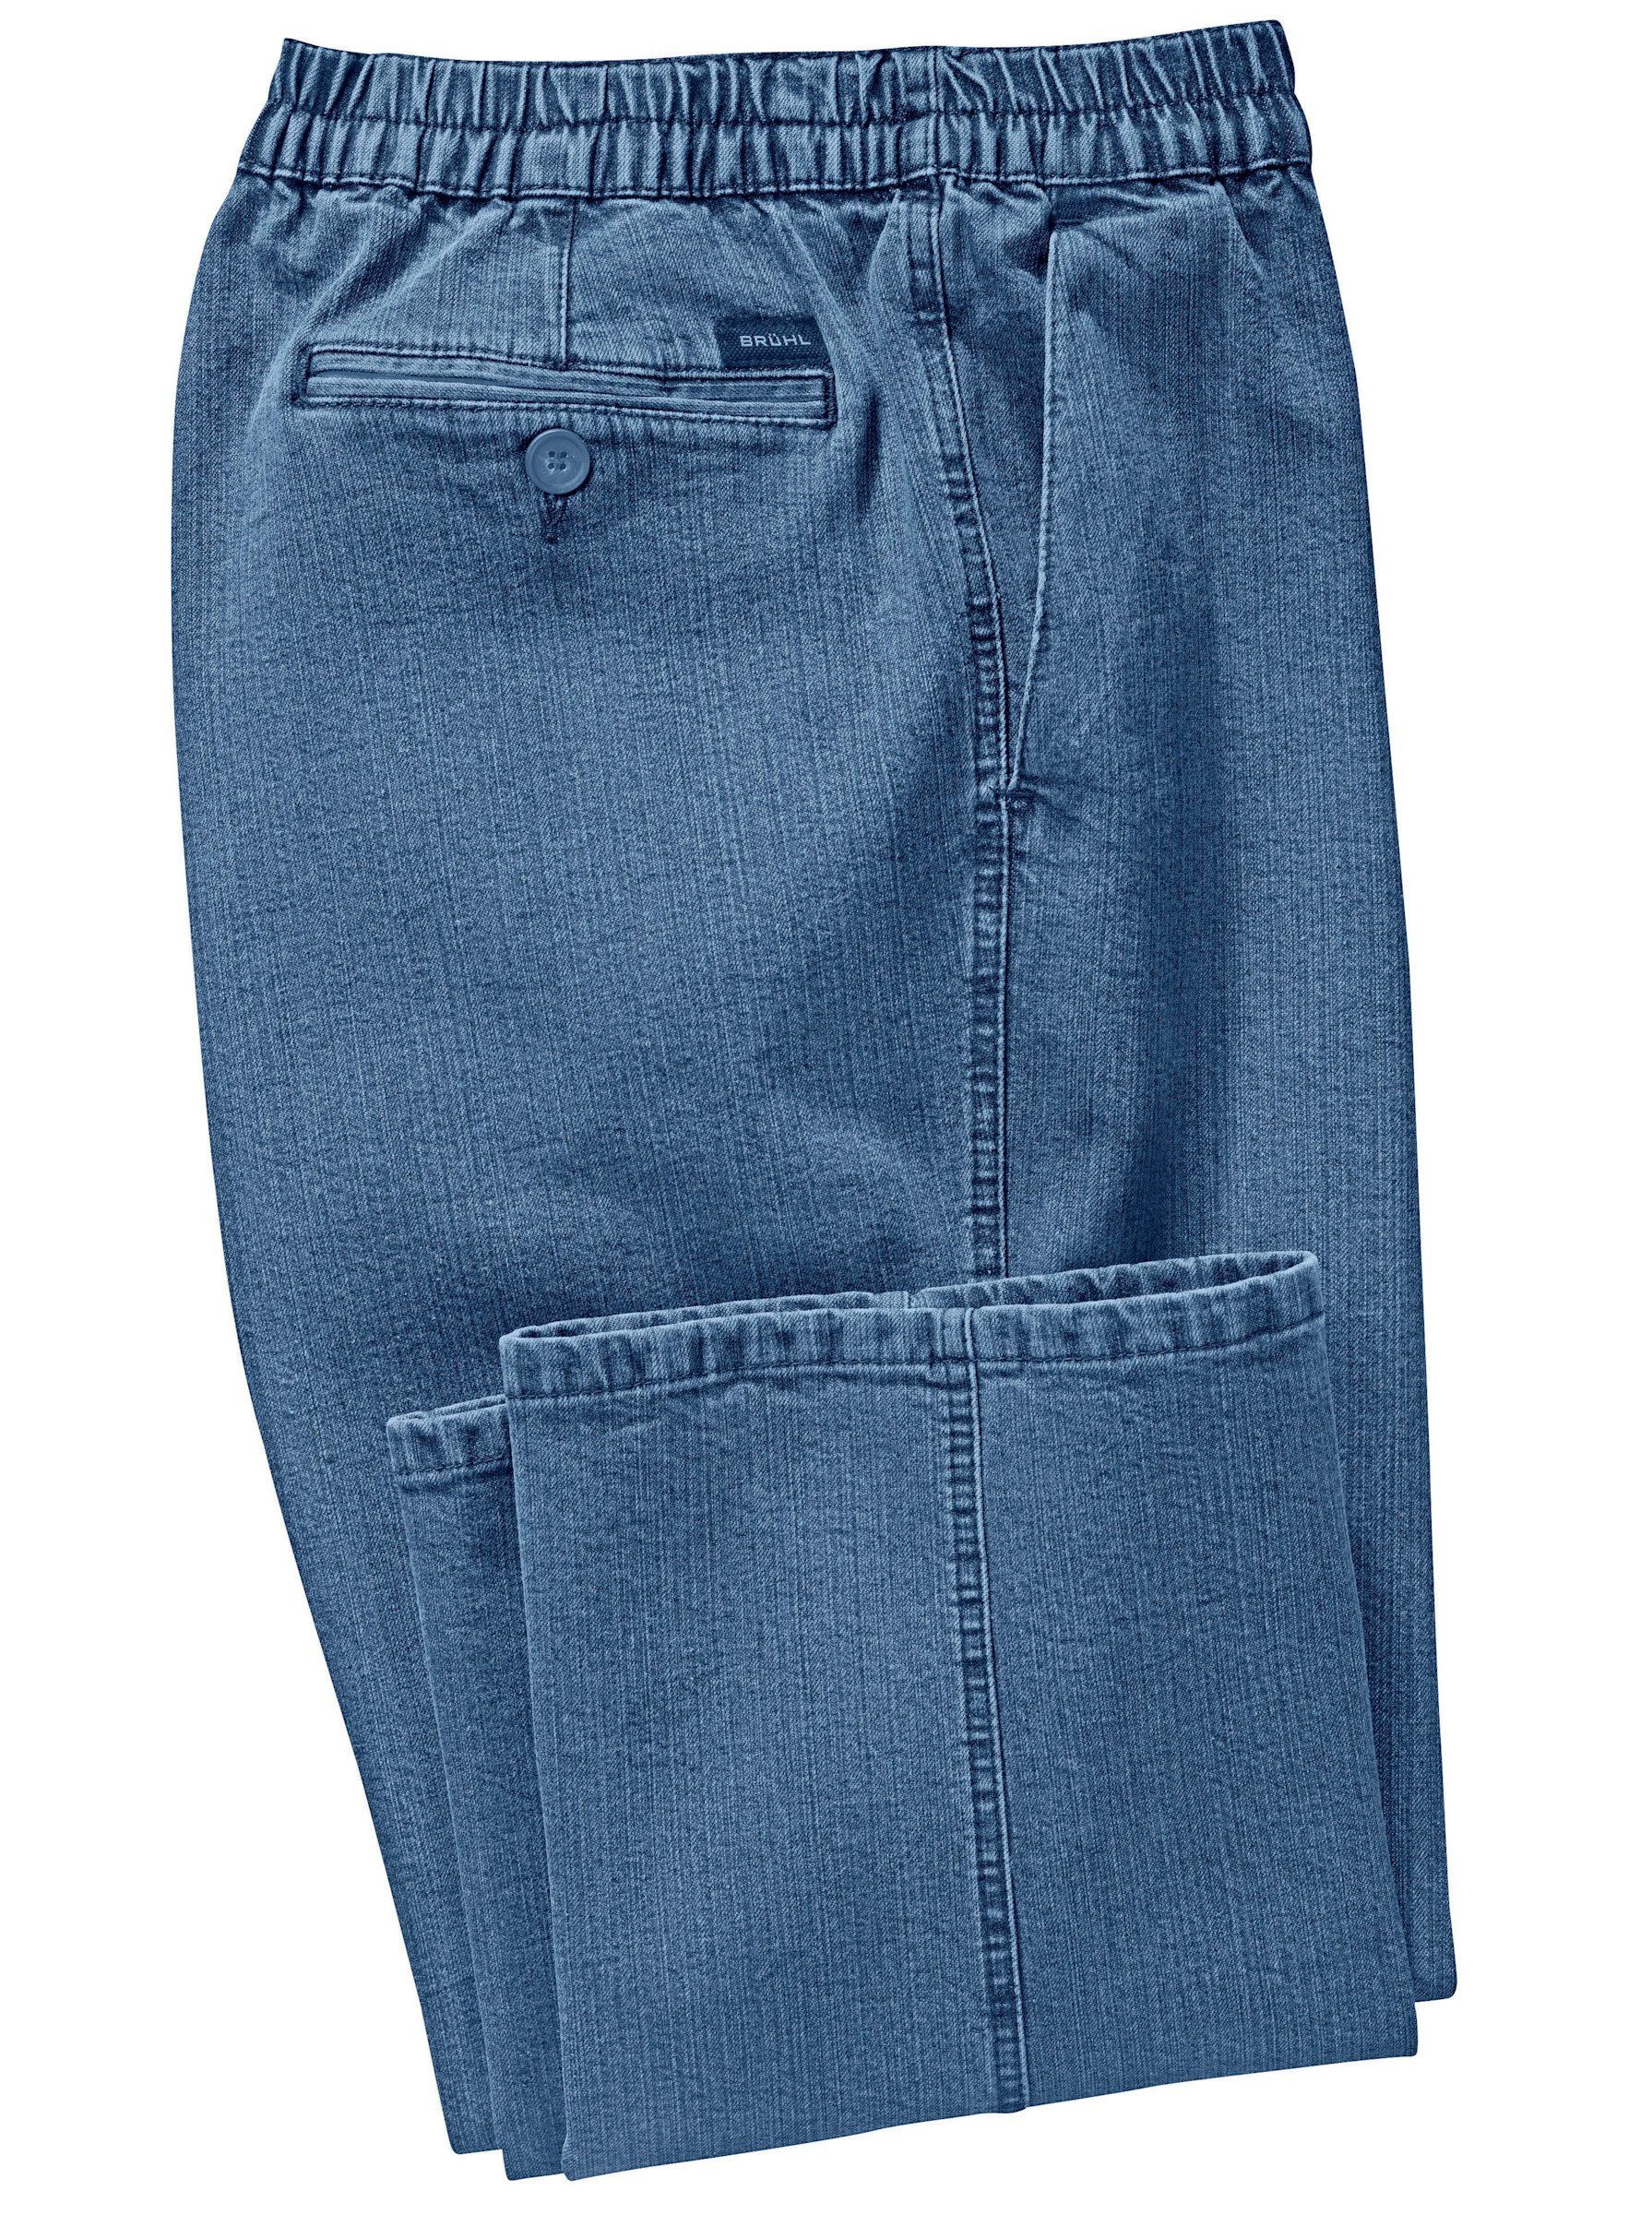 Brühl Bequeme Jeans Jeans